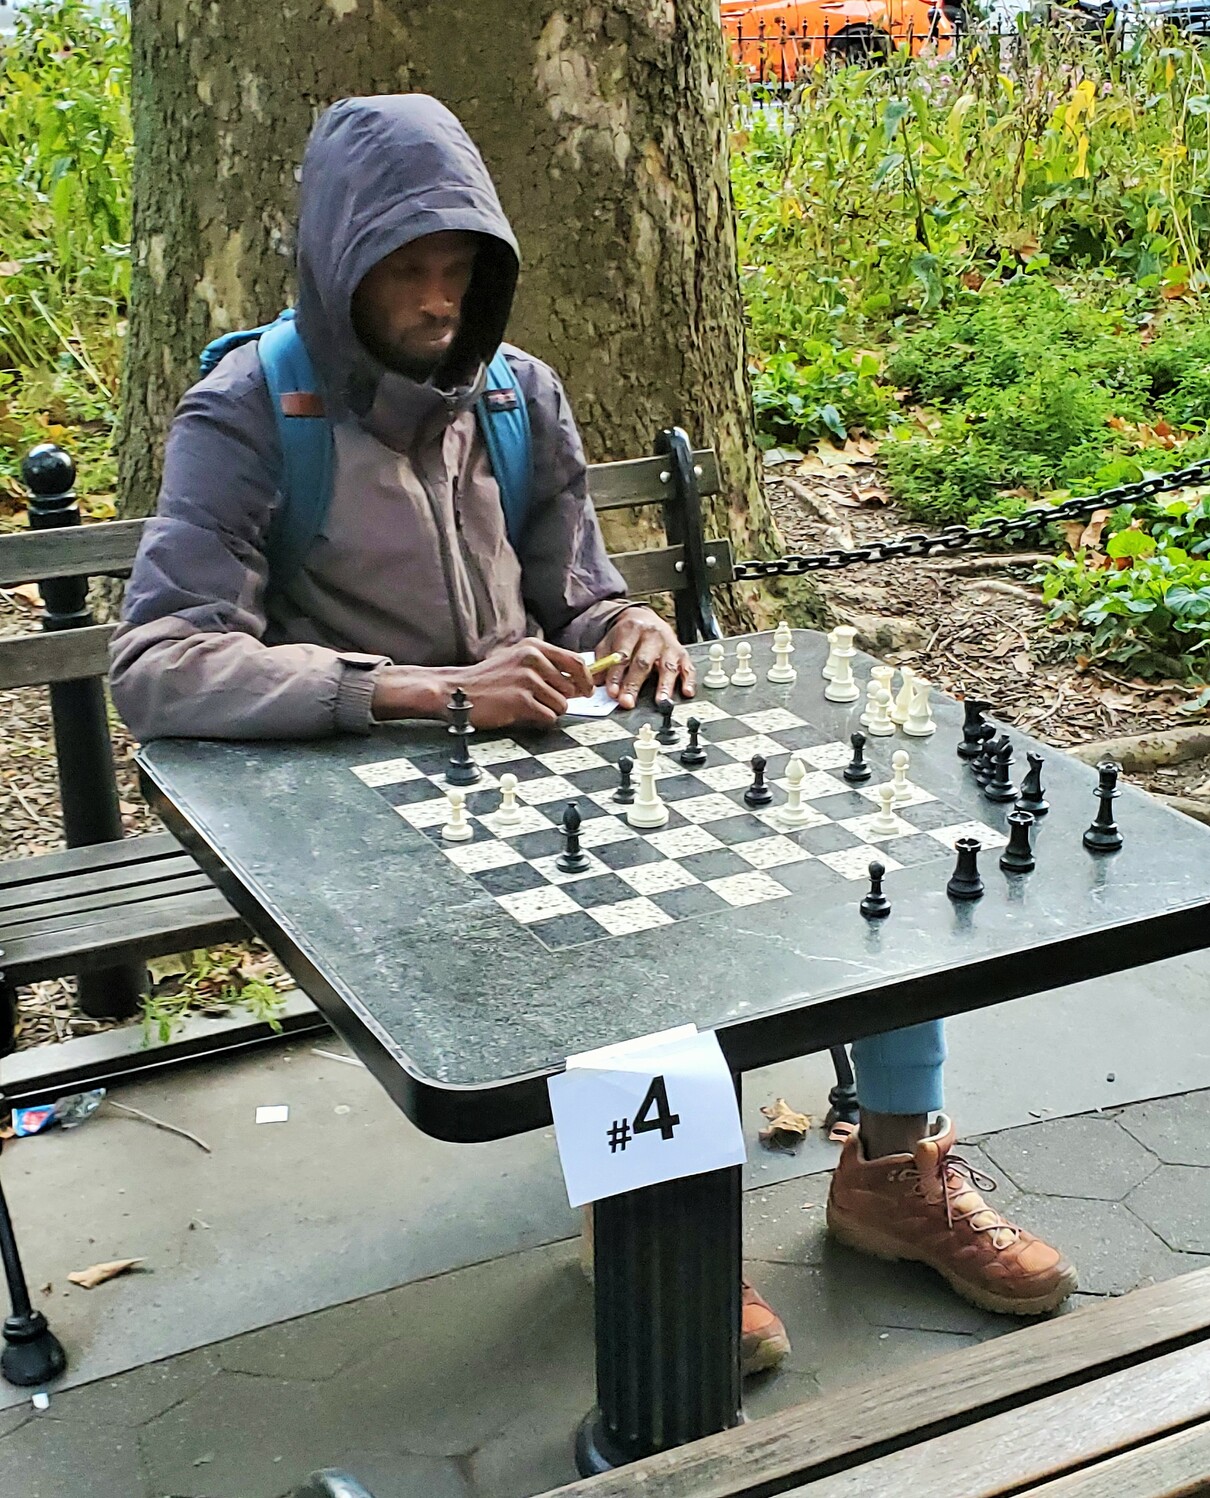 Chess Hustler Immediately Knew I Was Good 